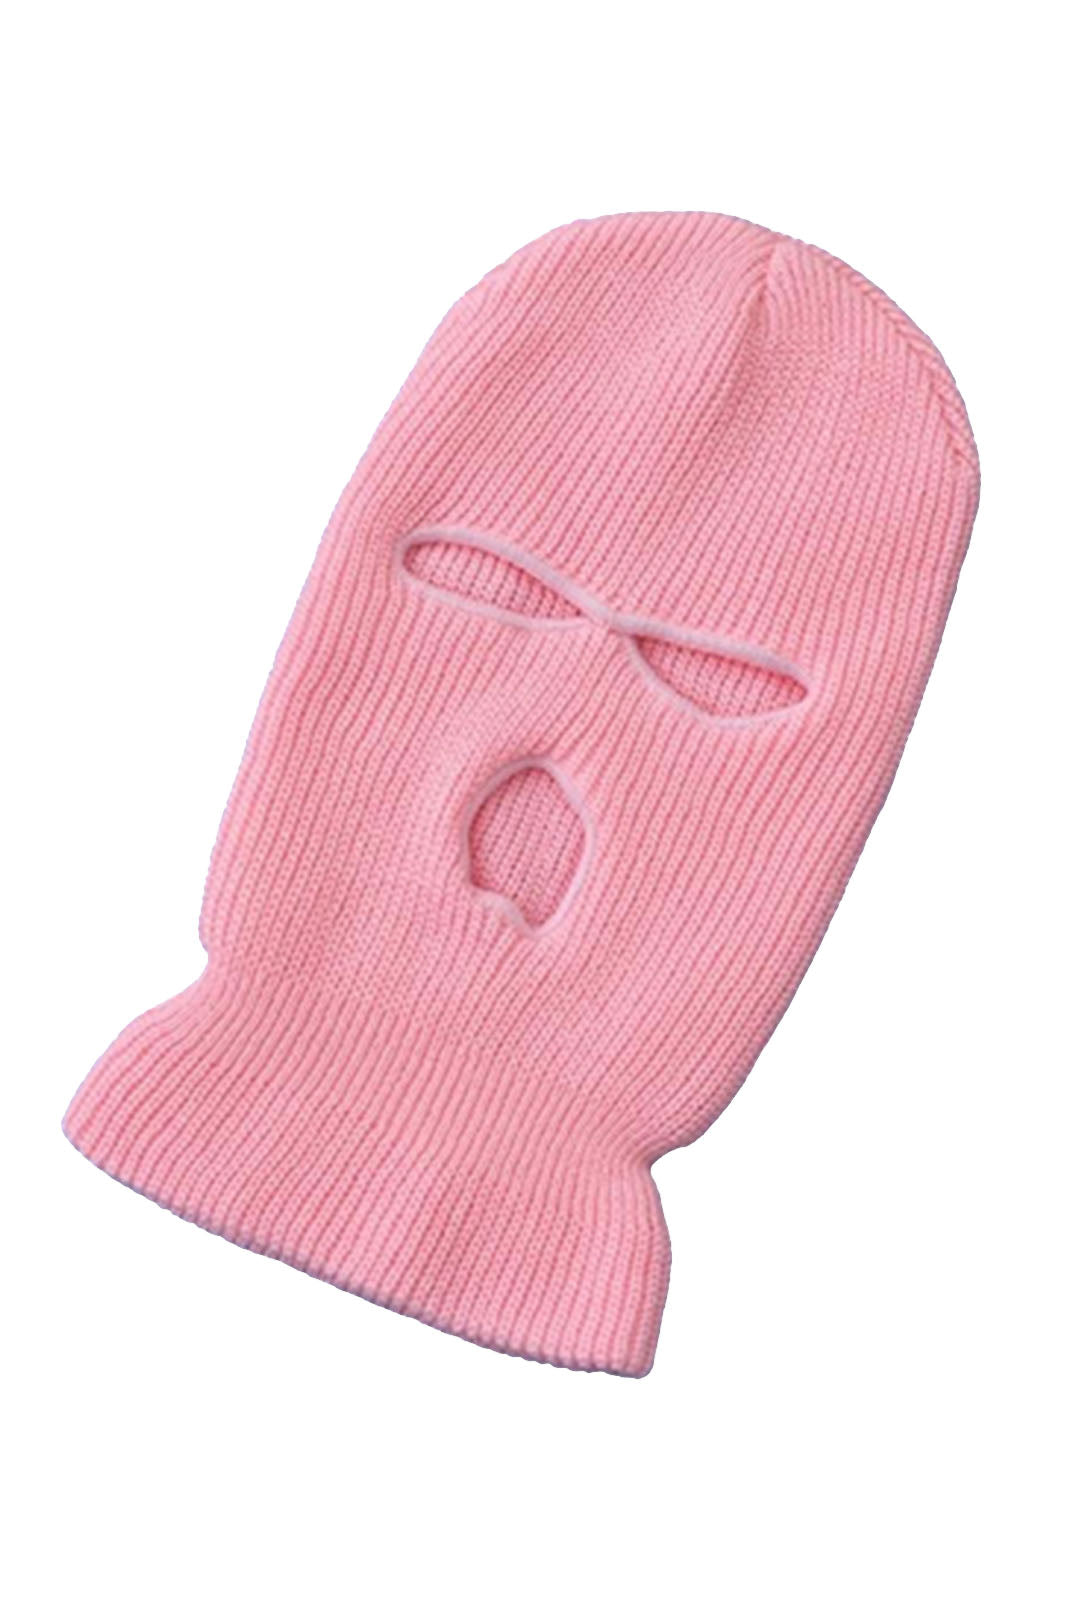 Light Pink Balaclava Mask